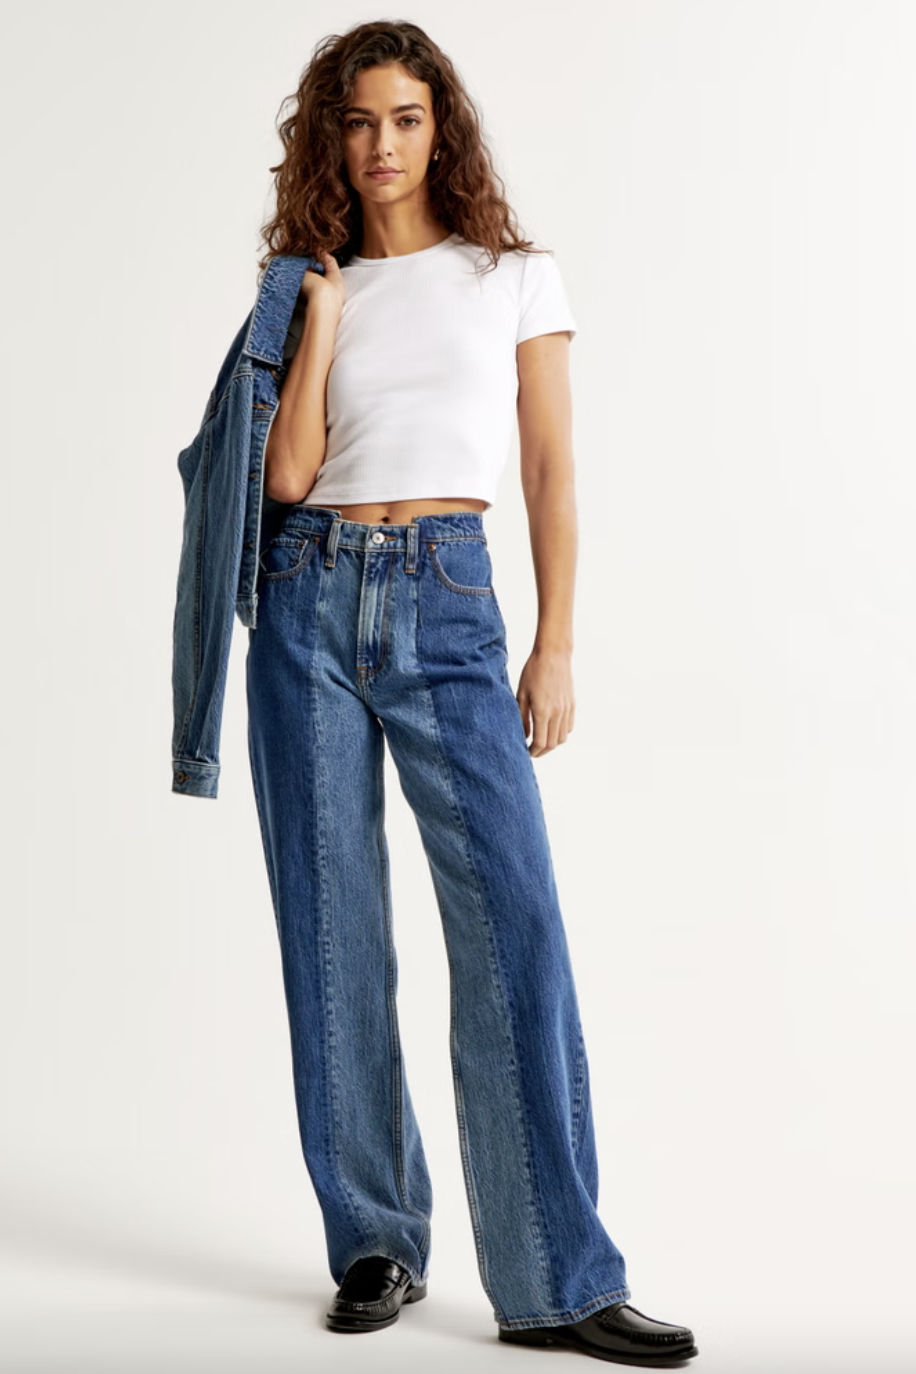 Best Selling Women's Jeans